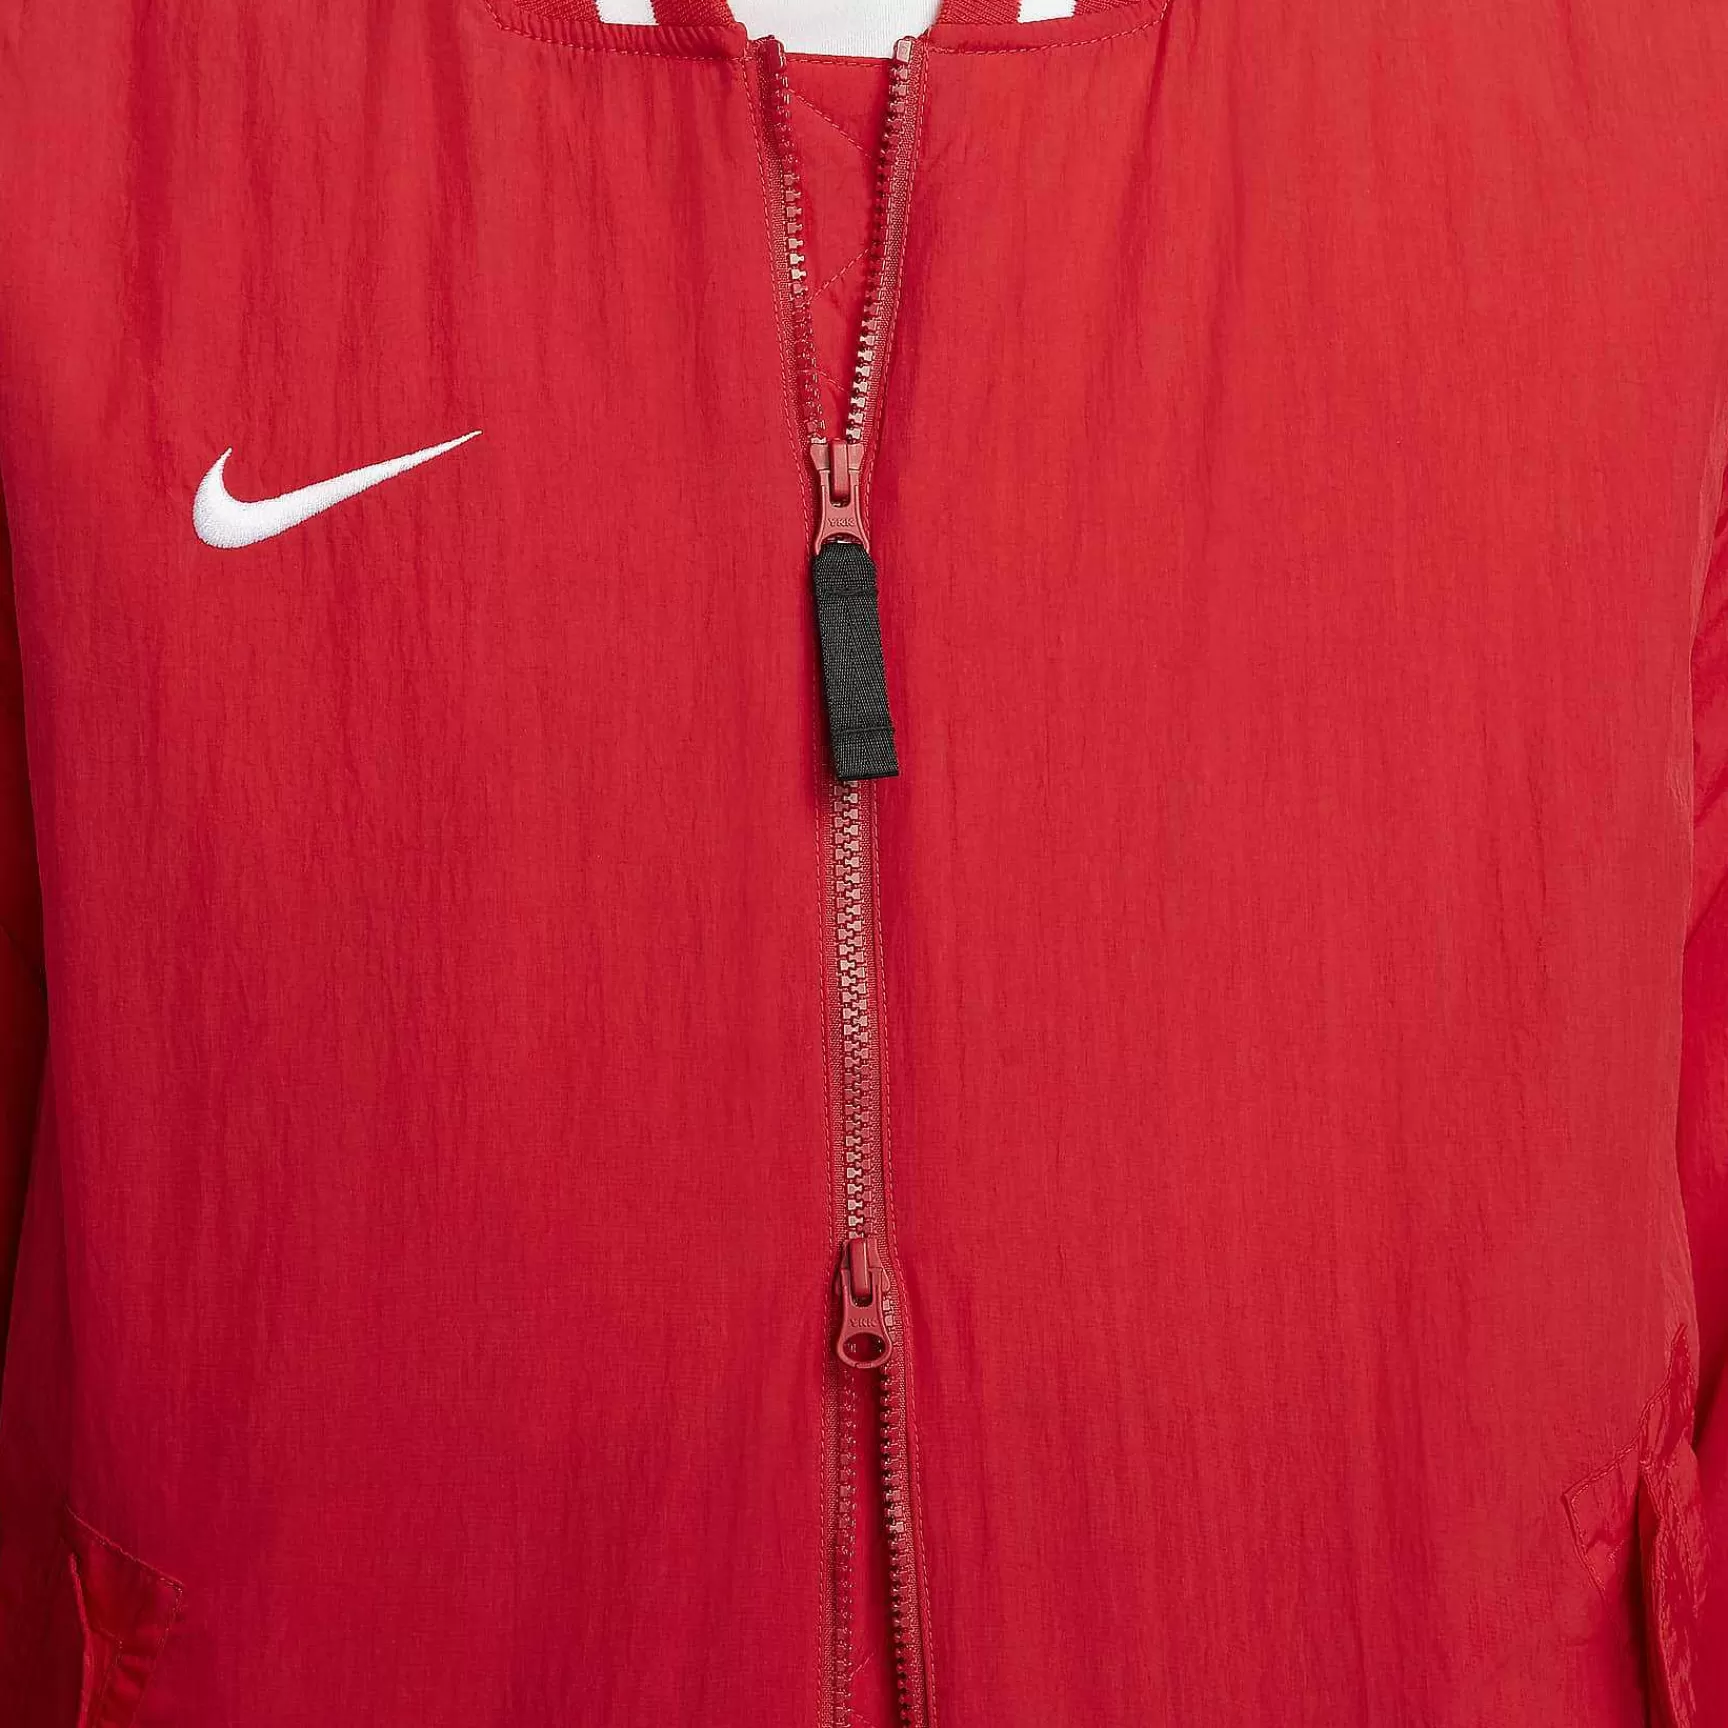 Mezczyzni Nike Odziez Wierzchnia I Kurtki | Dugout